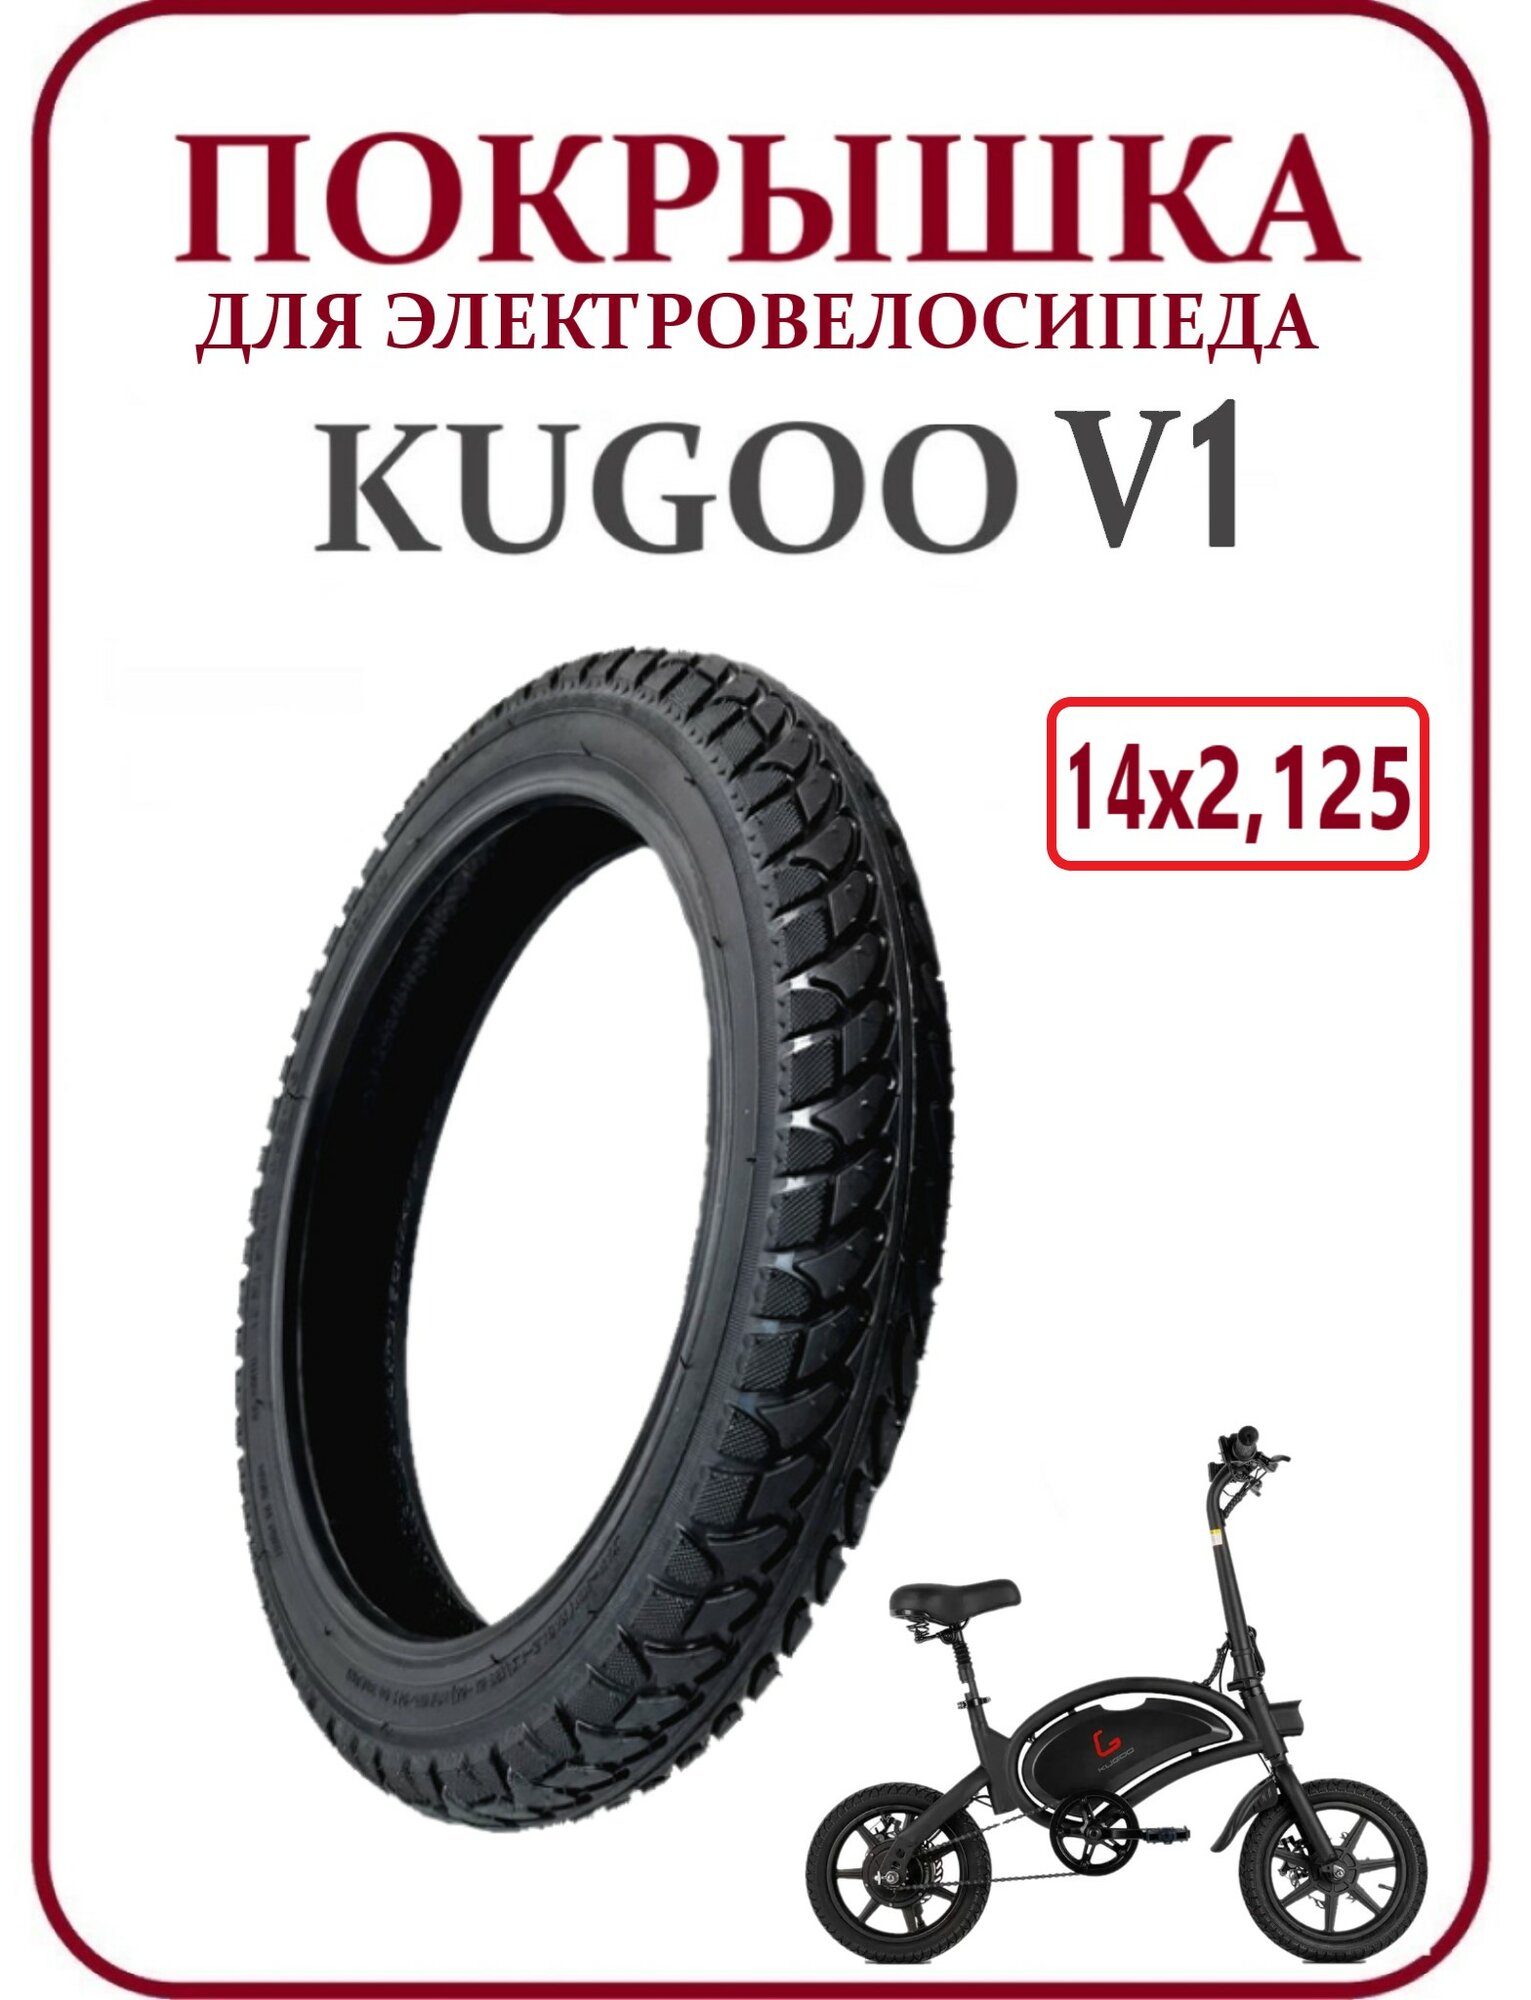 Покрышка внедорожная для электровелосипеда Kugoo V1 14х2,125